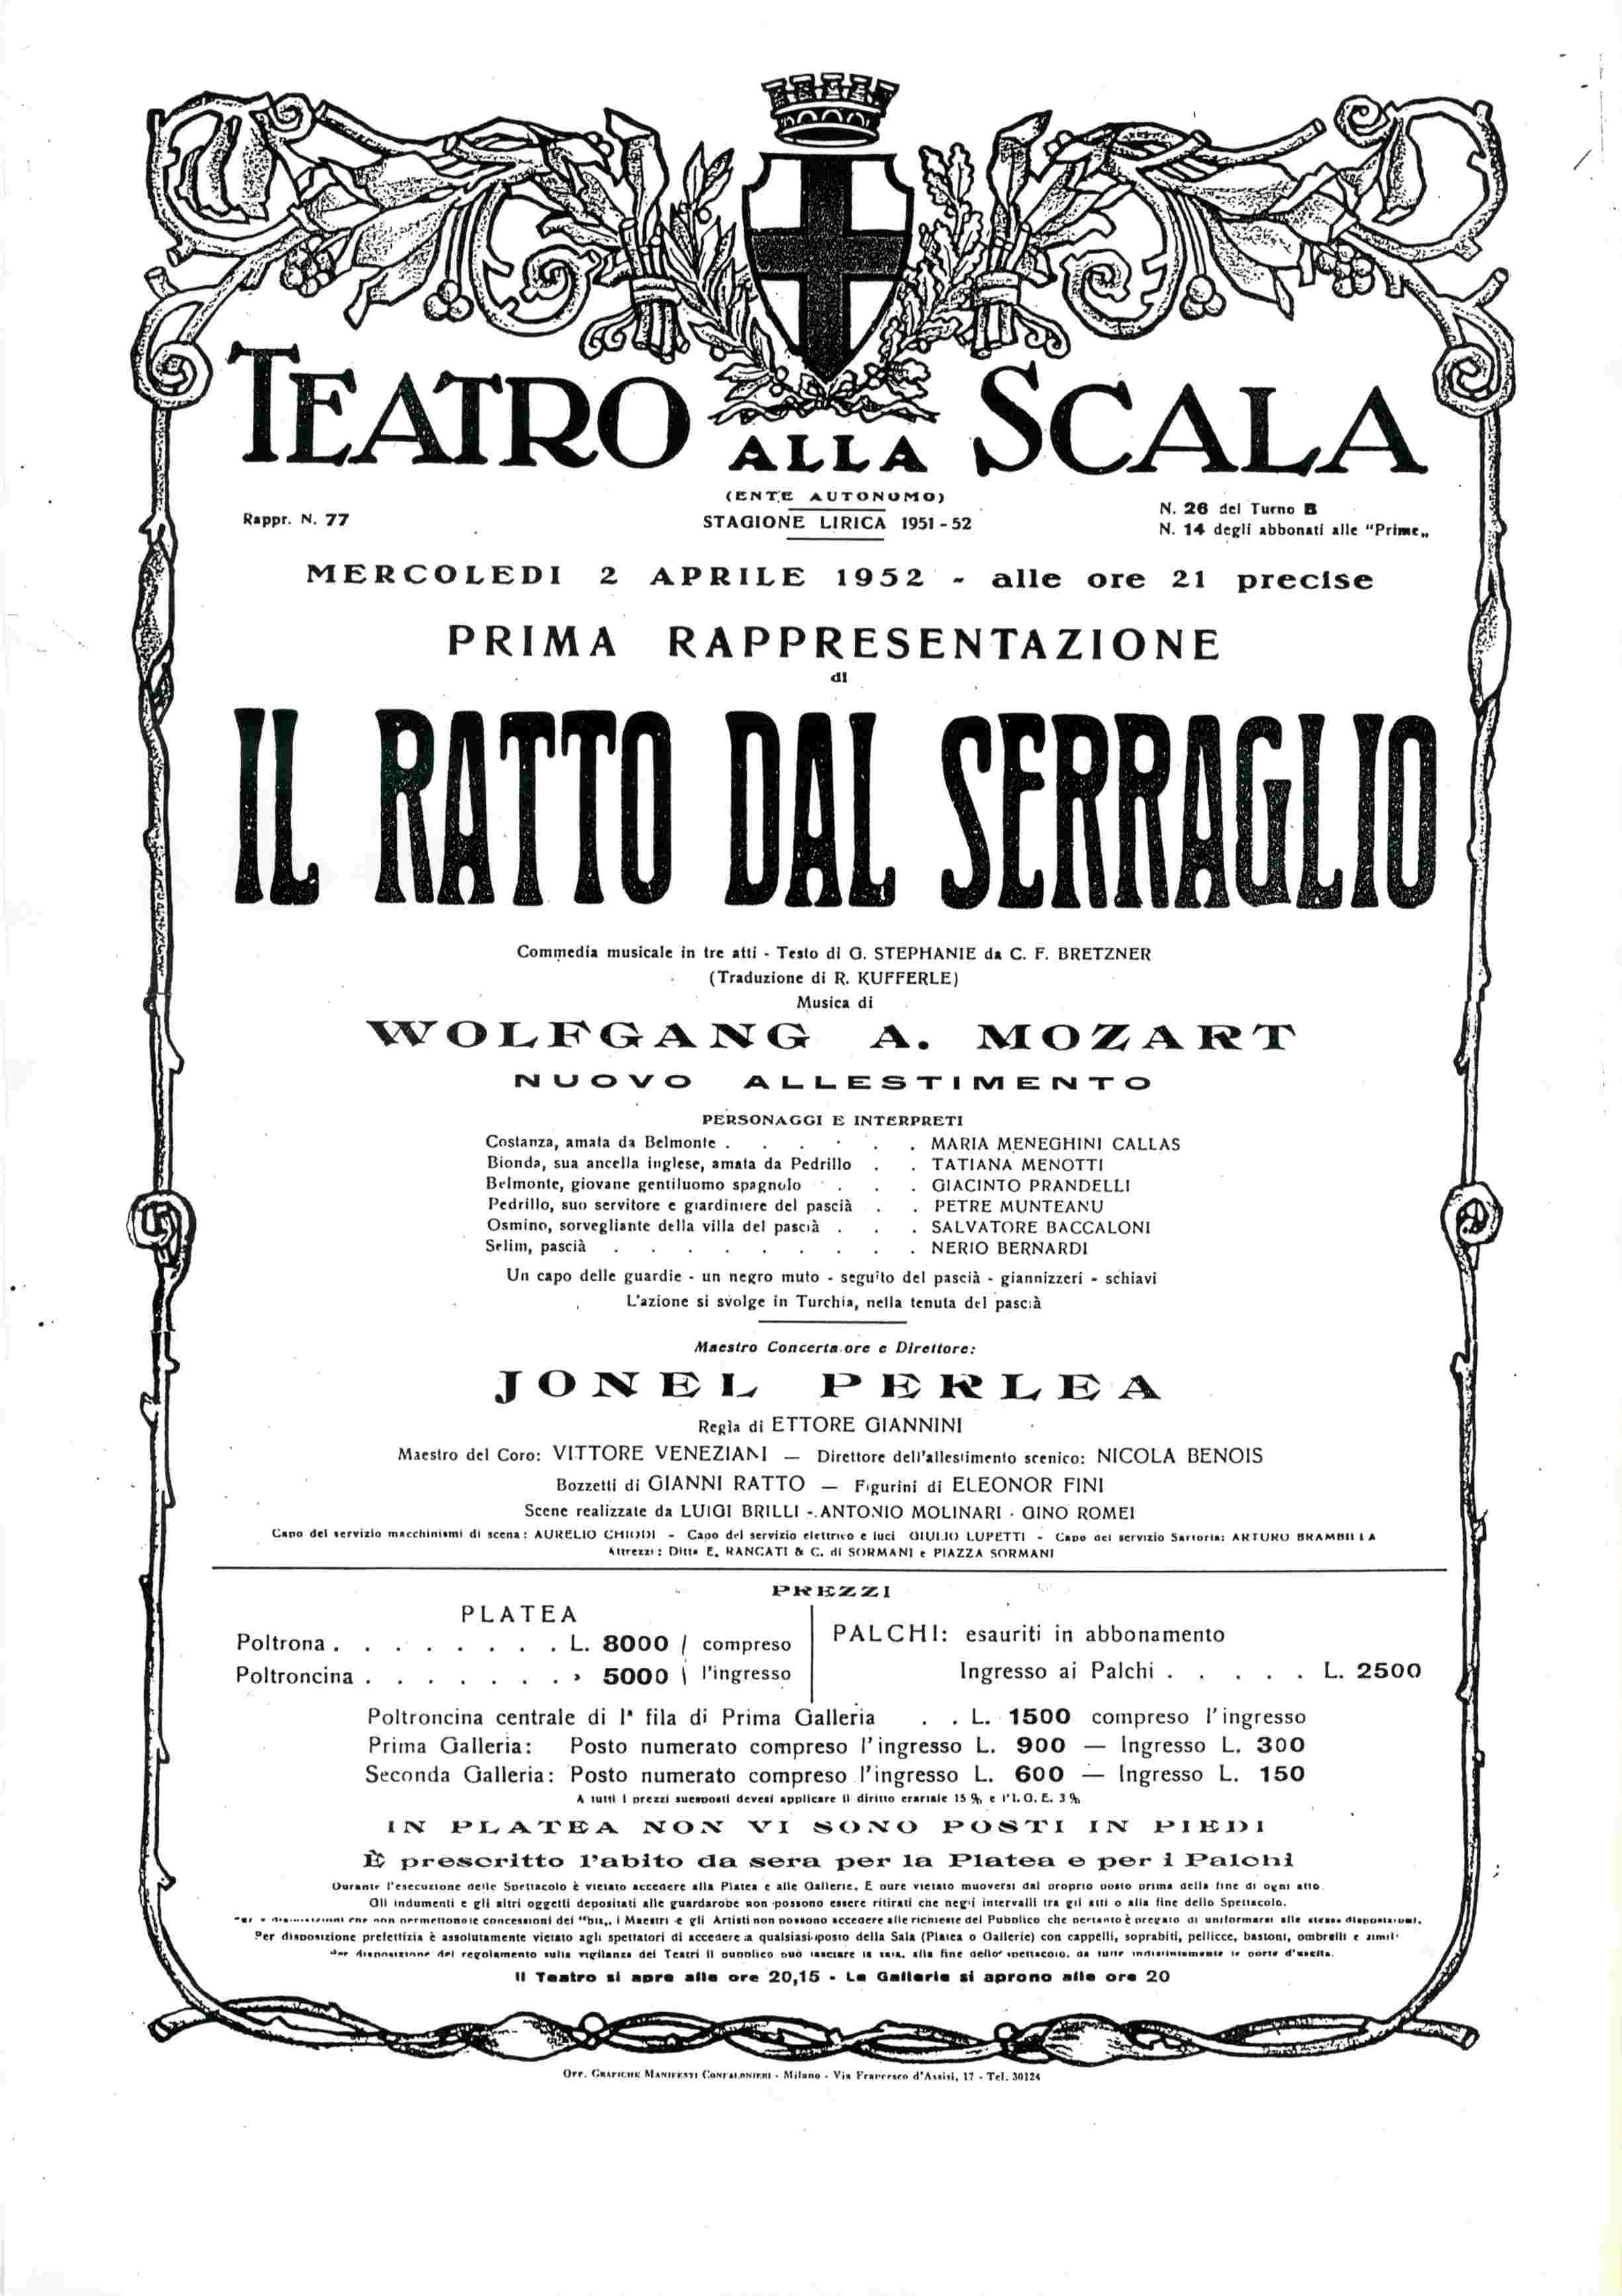 Locandina della prima rappresentazione dell'opera teatrale "Il ratto dal serraglio" del 1952, presso il Teatro alla Scala, con la regia di Ettore Giannini